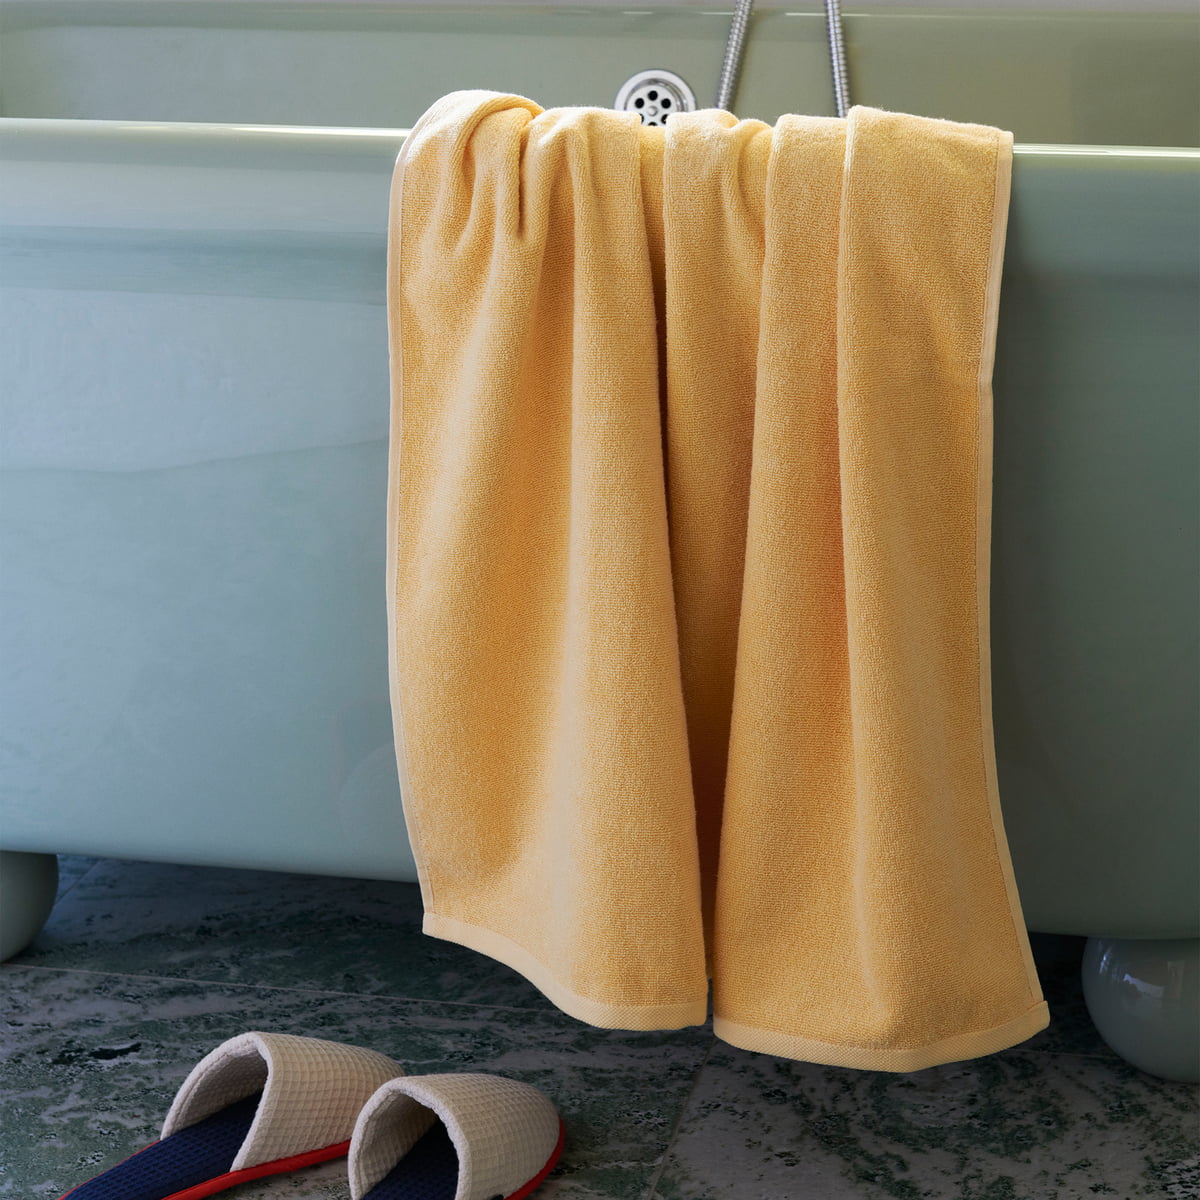 Hay Trio Bath Towel, Yellow